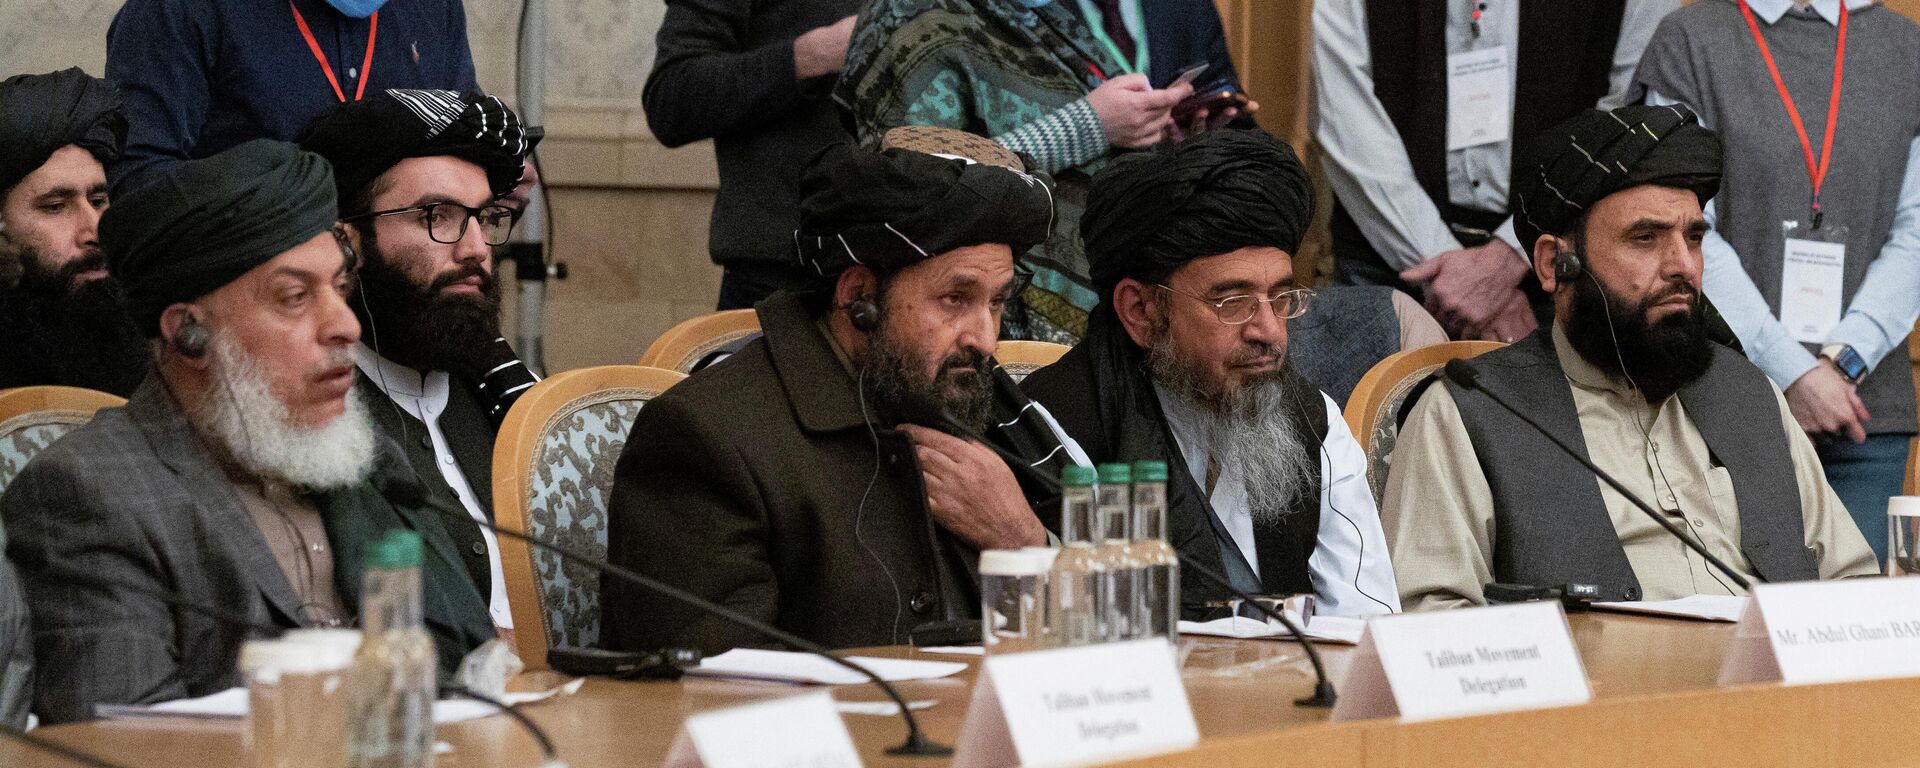 Los negociadores del Gobierno de Afganistán y del Movimiento Talibán* durante las conversaciones de paz en Moscú - Sputnik Mundo, 1920, 19.03.2021